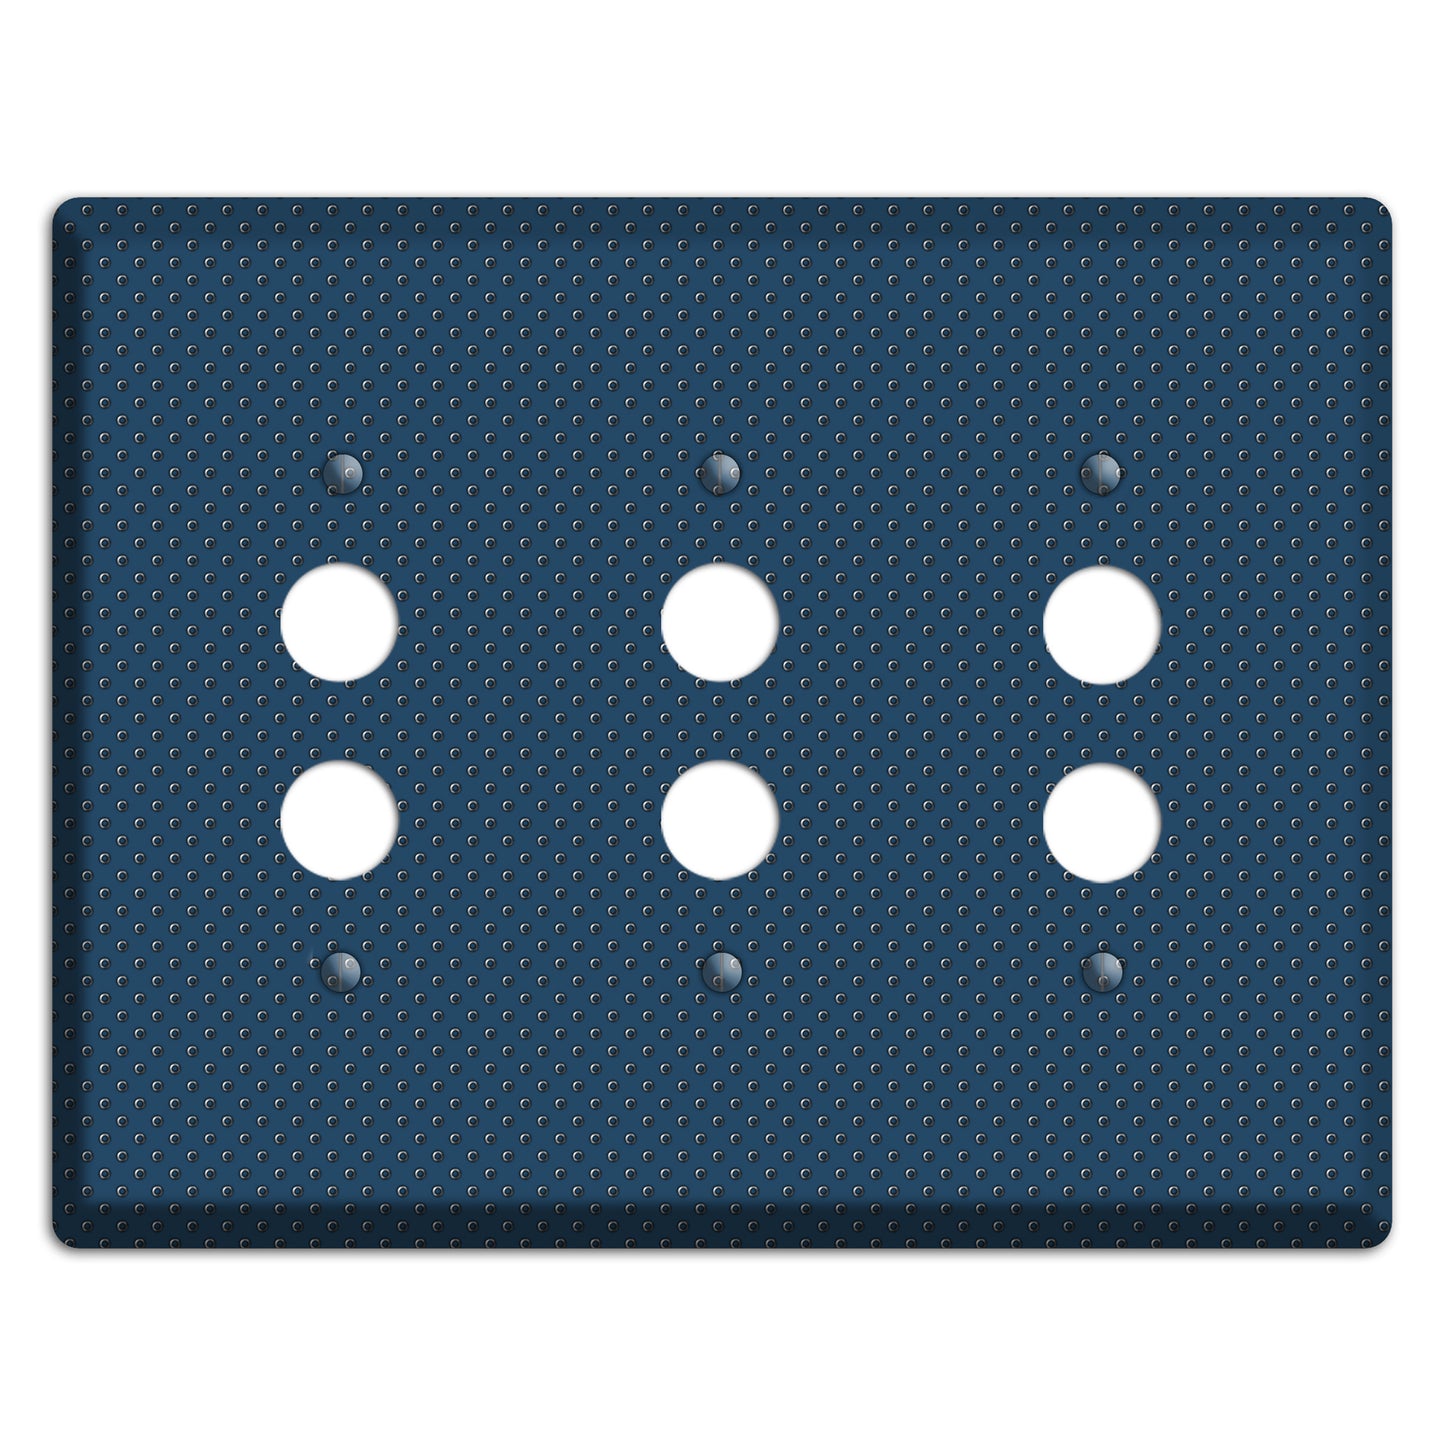 Blue Small Dots 3 Pushbutton Wallplate